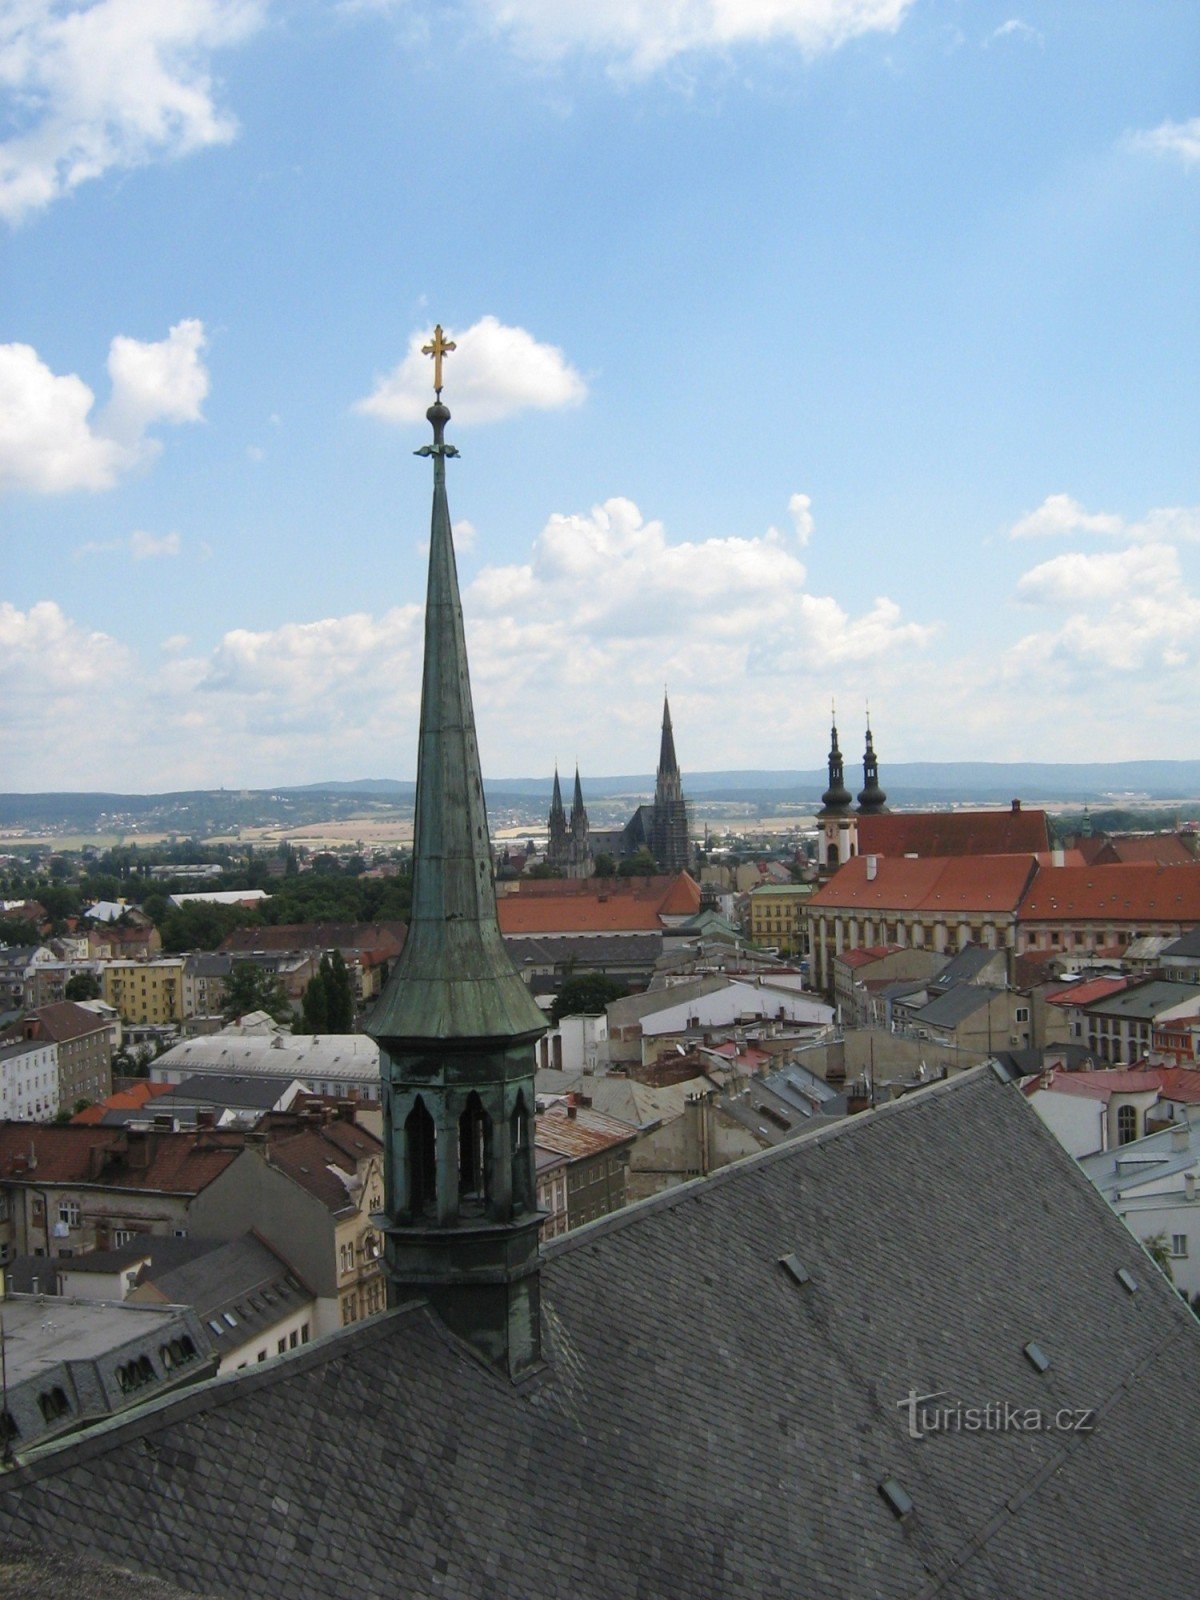 Uitzicht op de stad vanaf de toren van de kerk van St. Morice